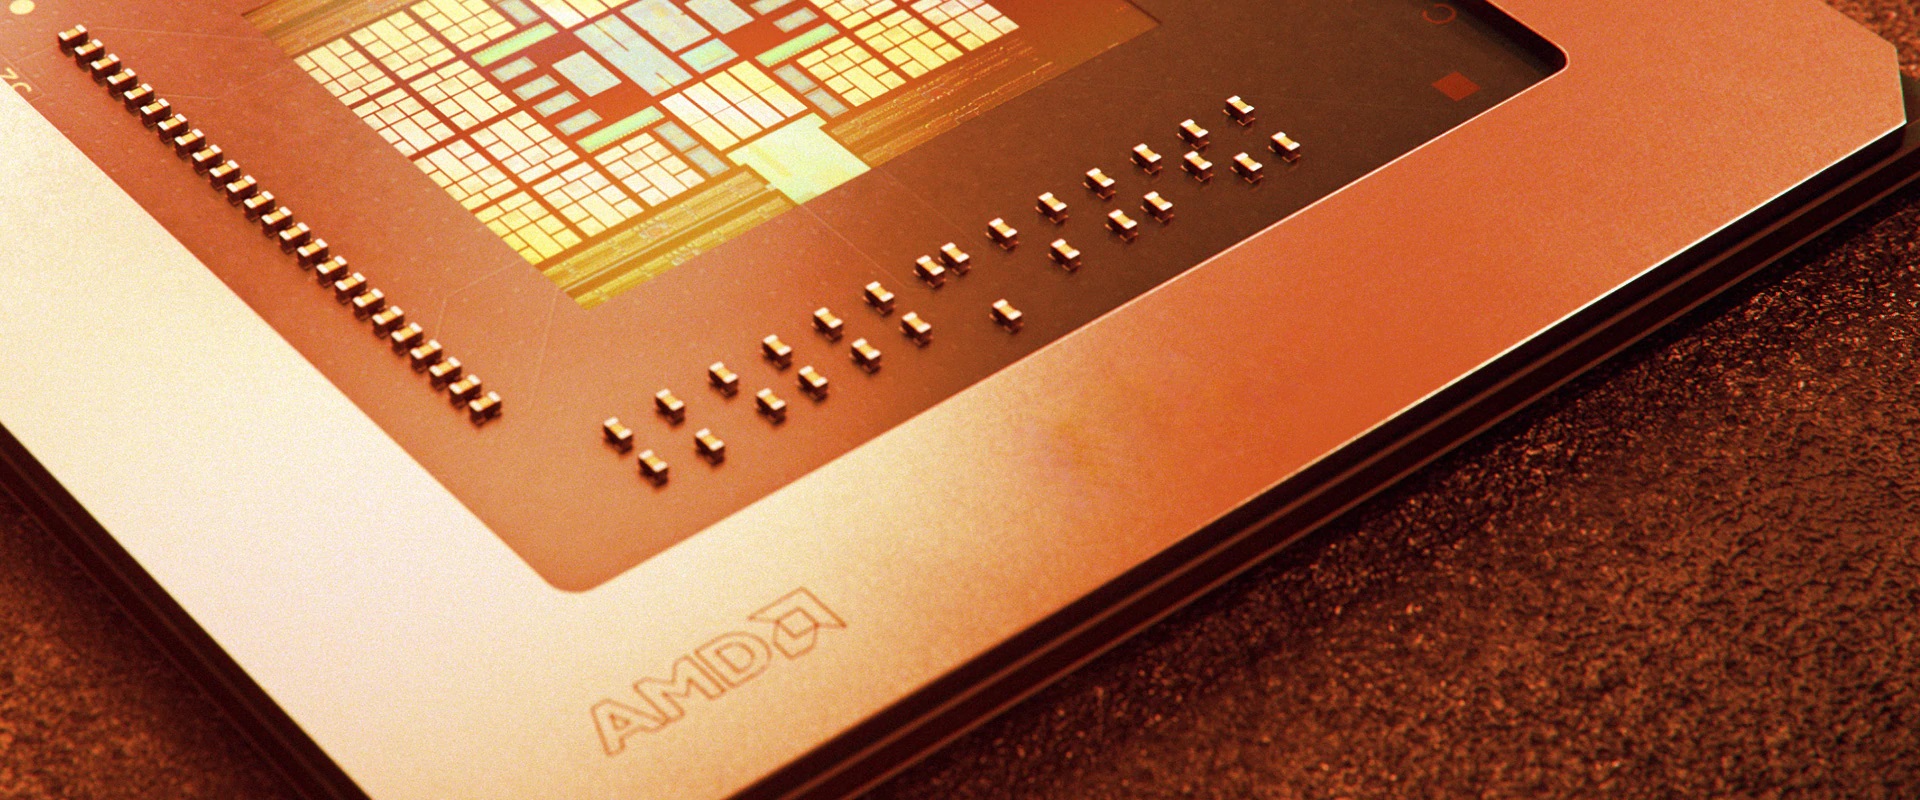 AMD donnera un bref aperçu de Zen 4 au cours du CES 2022